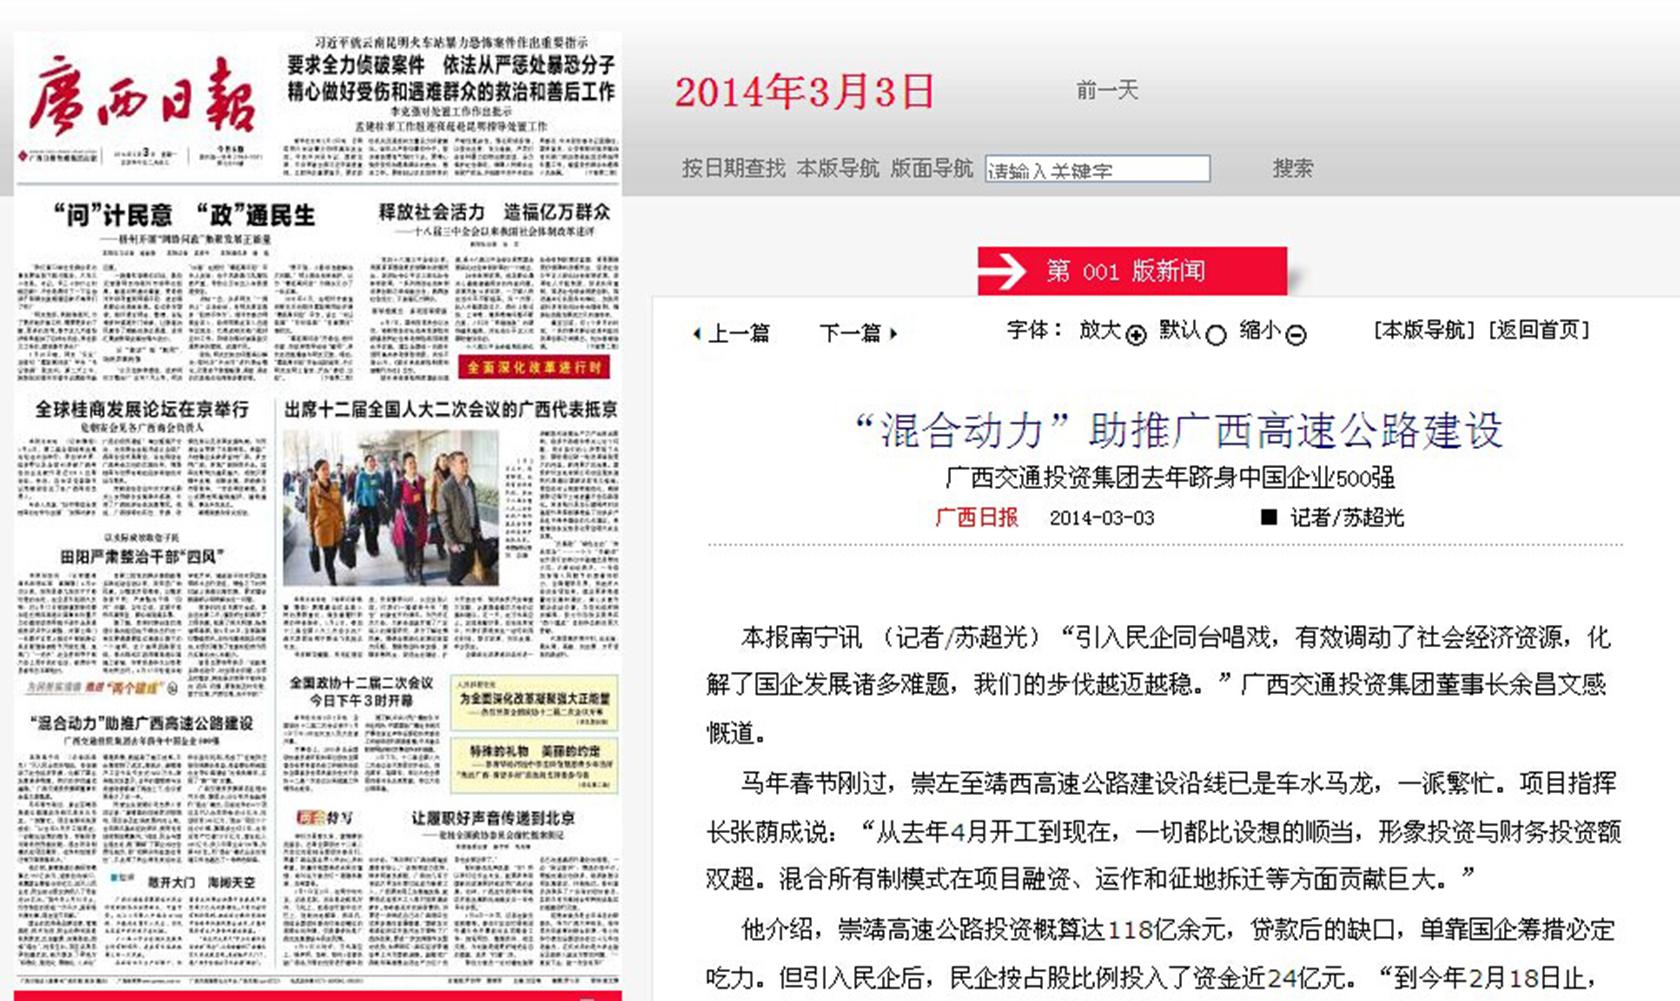 广西日报2015年2月1日第1版-民营经济搭上“混合动力”快车